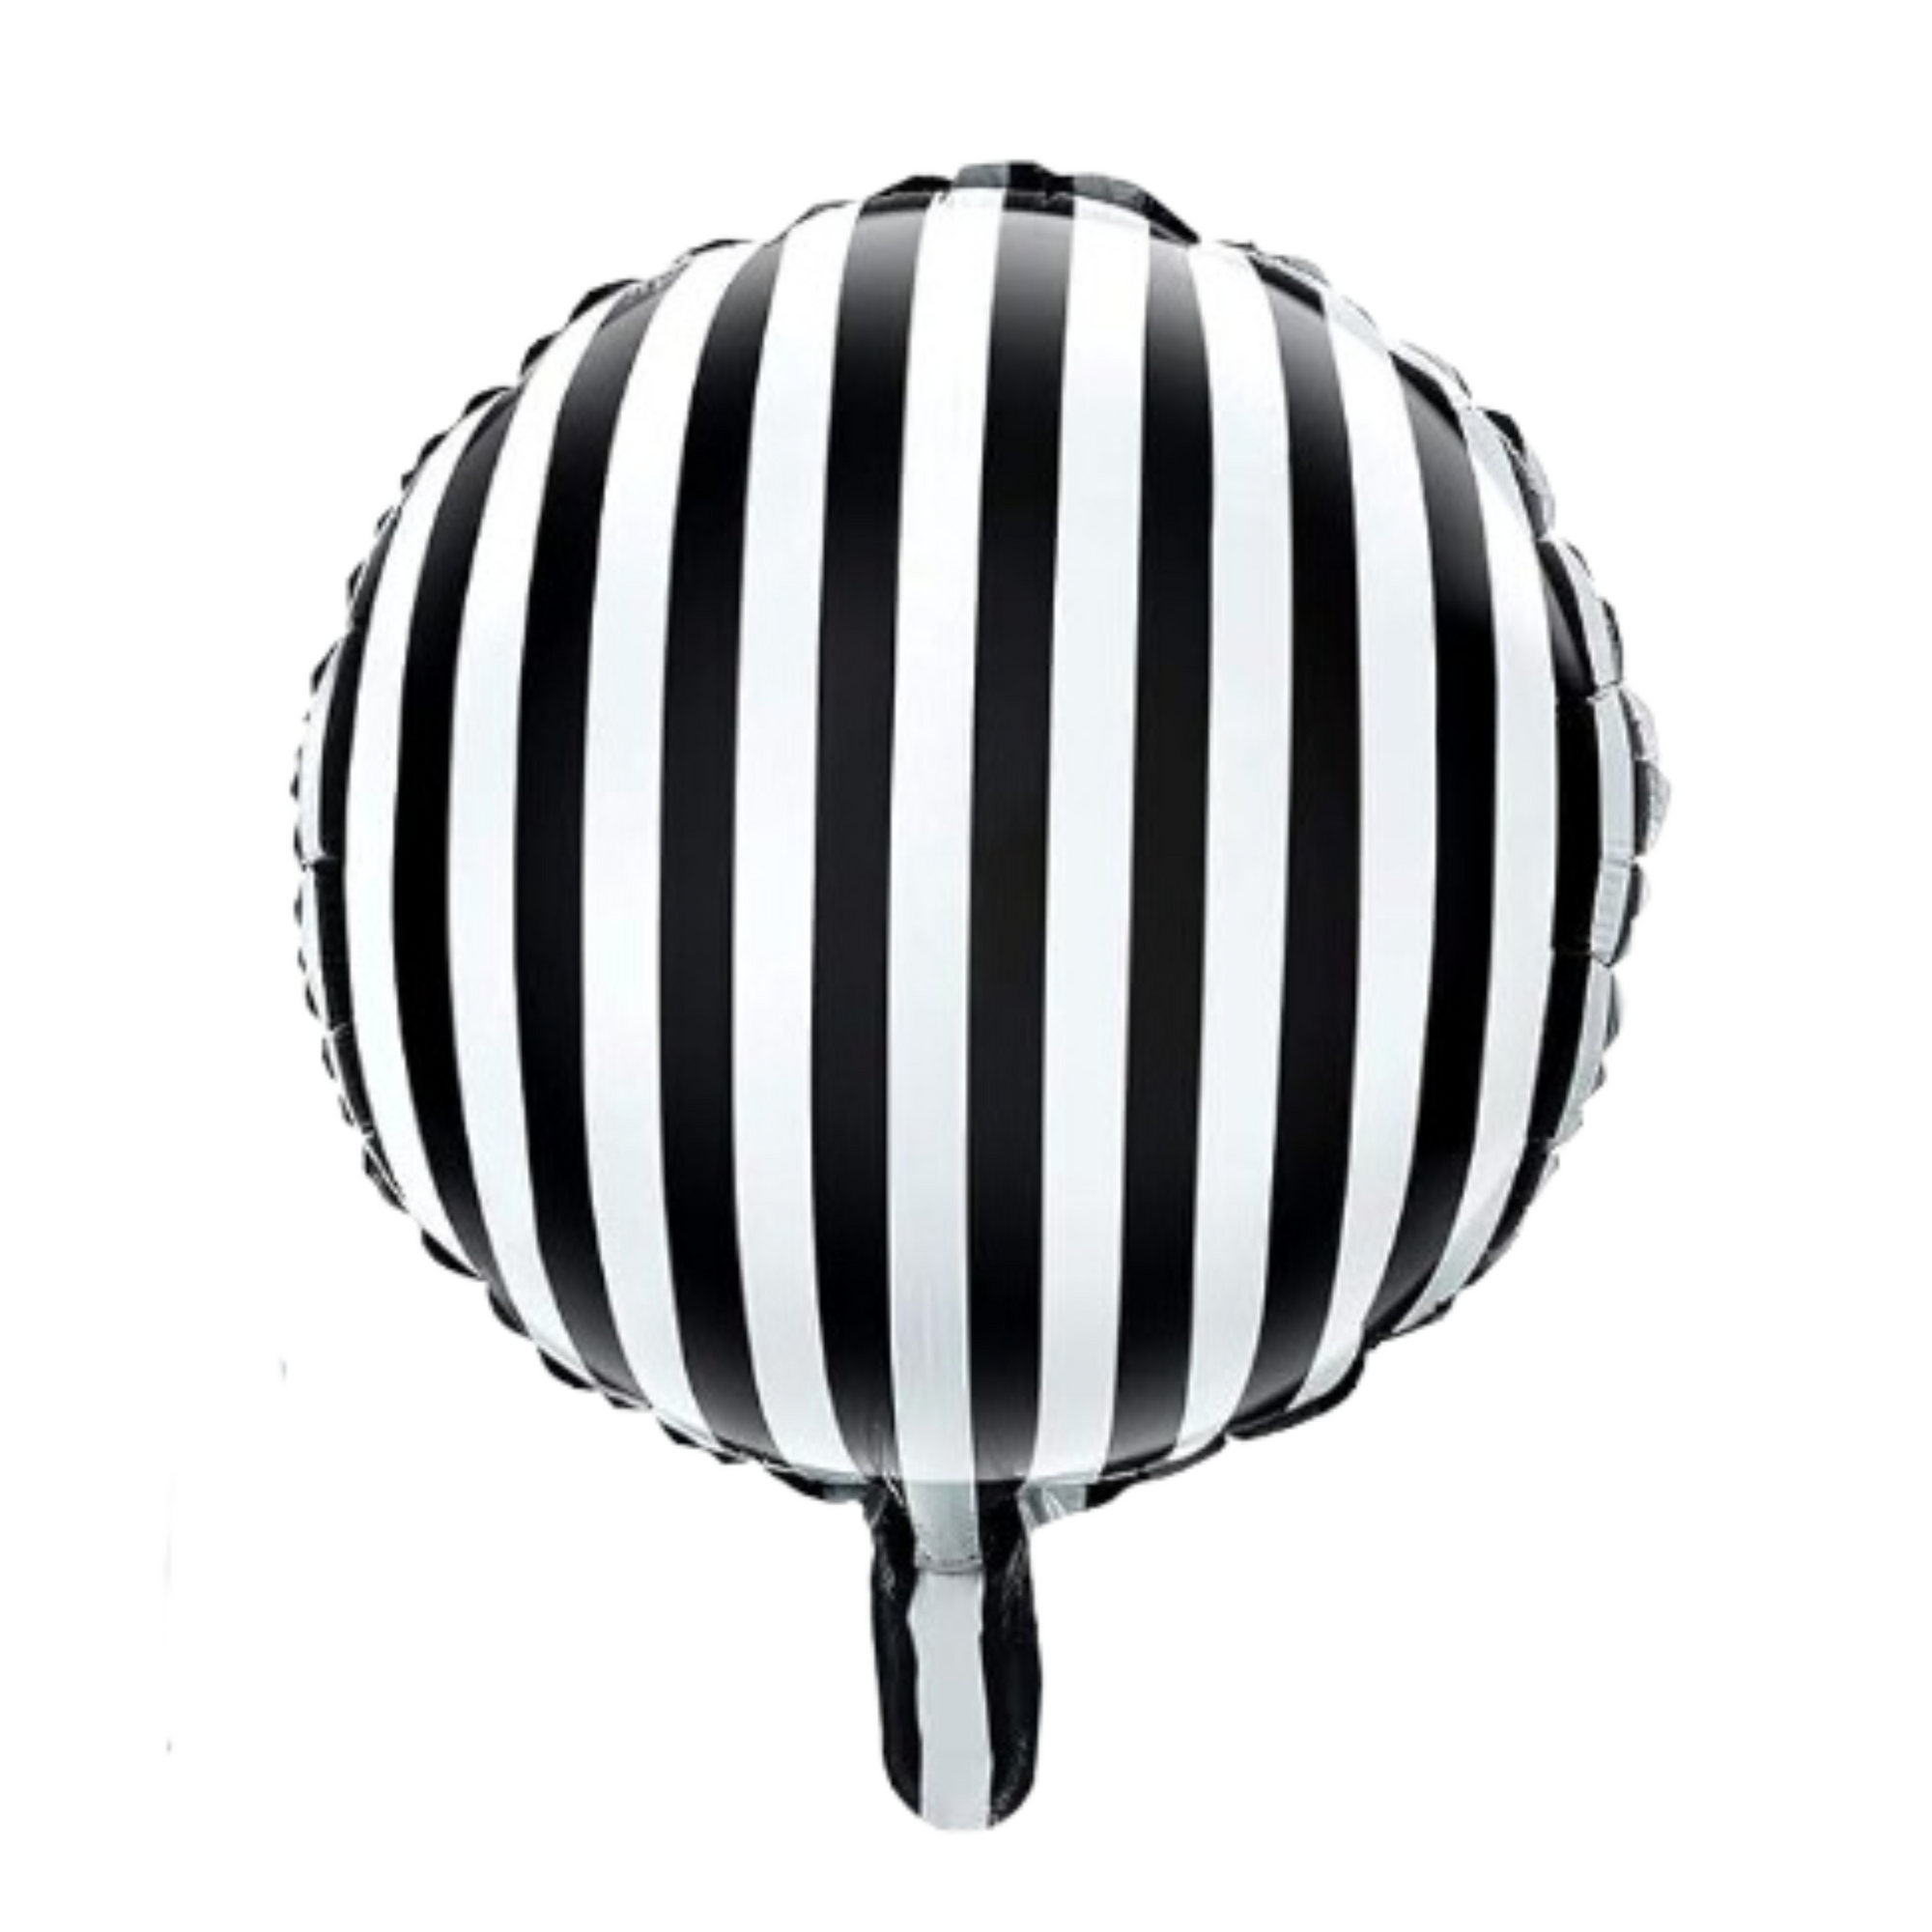 Round Mylar - Black & White Striped